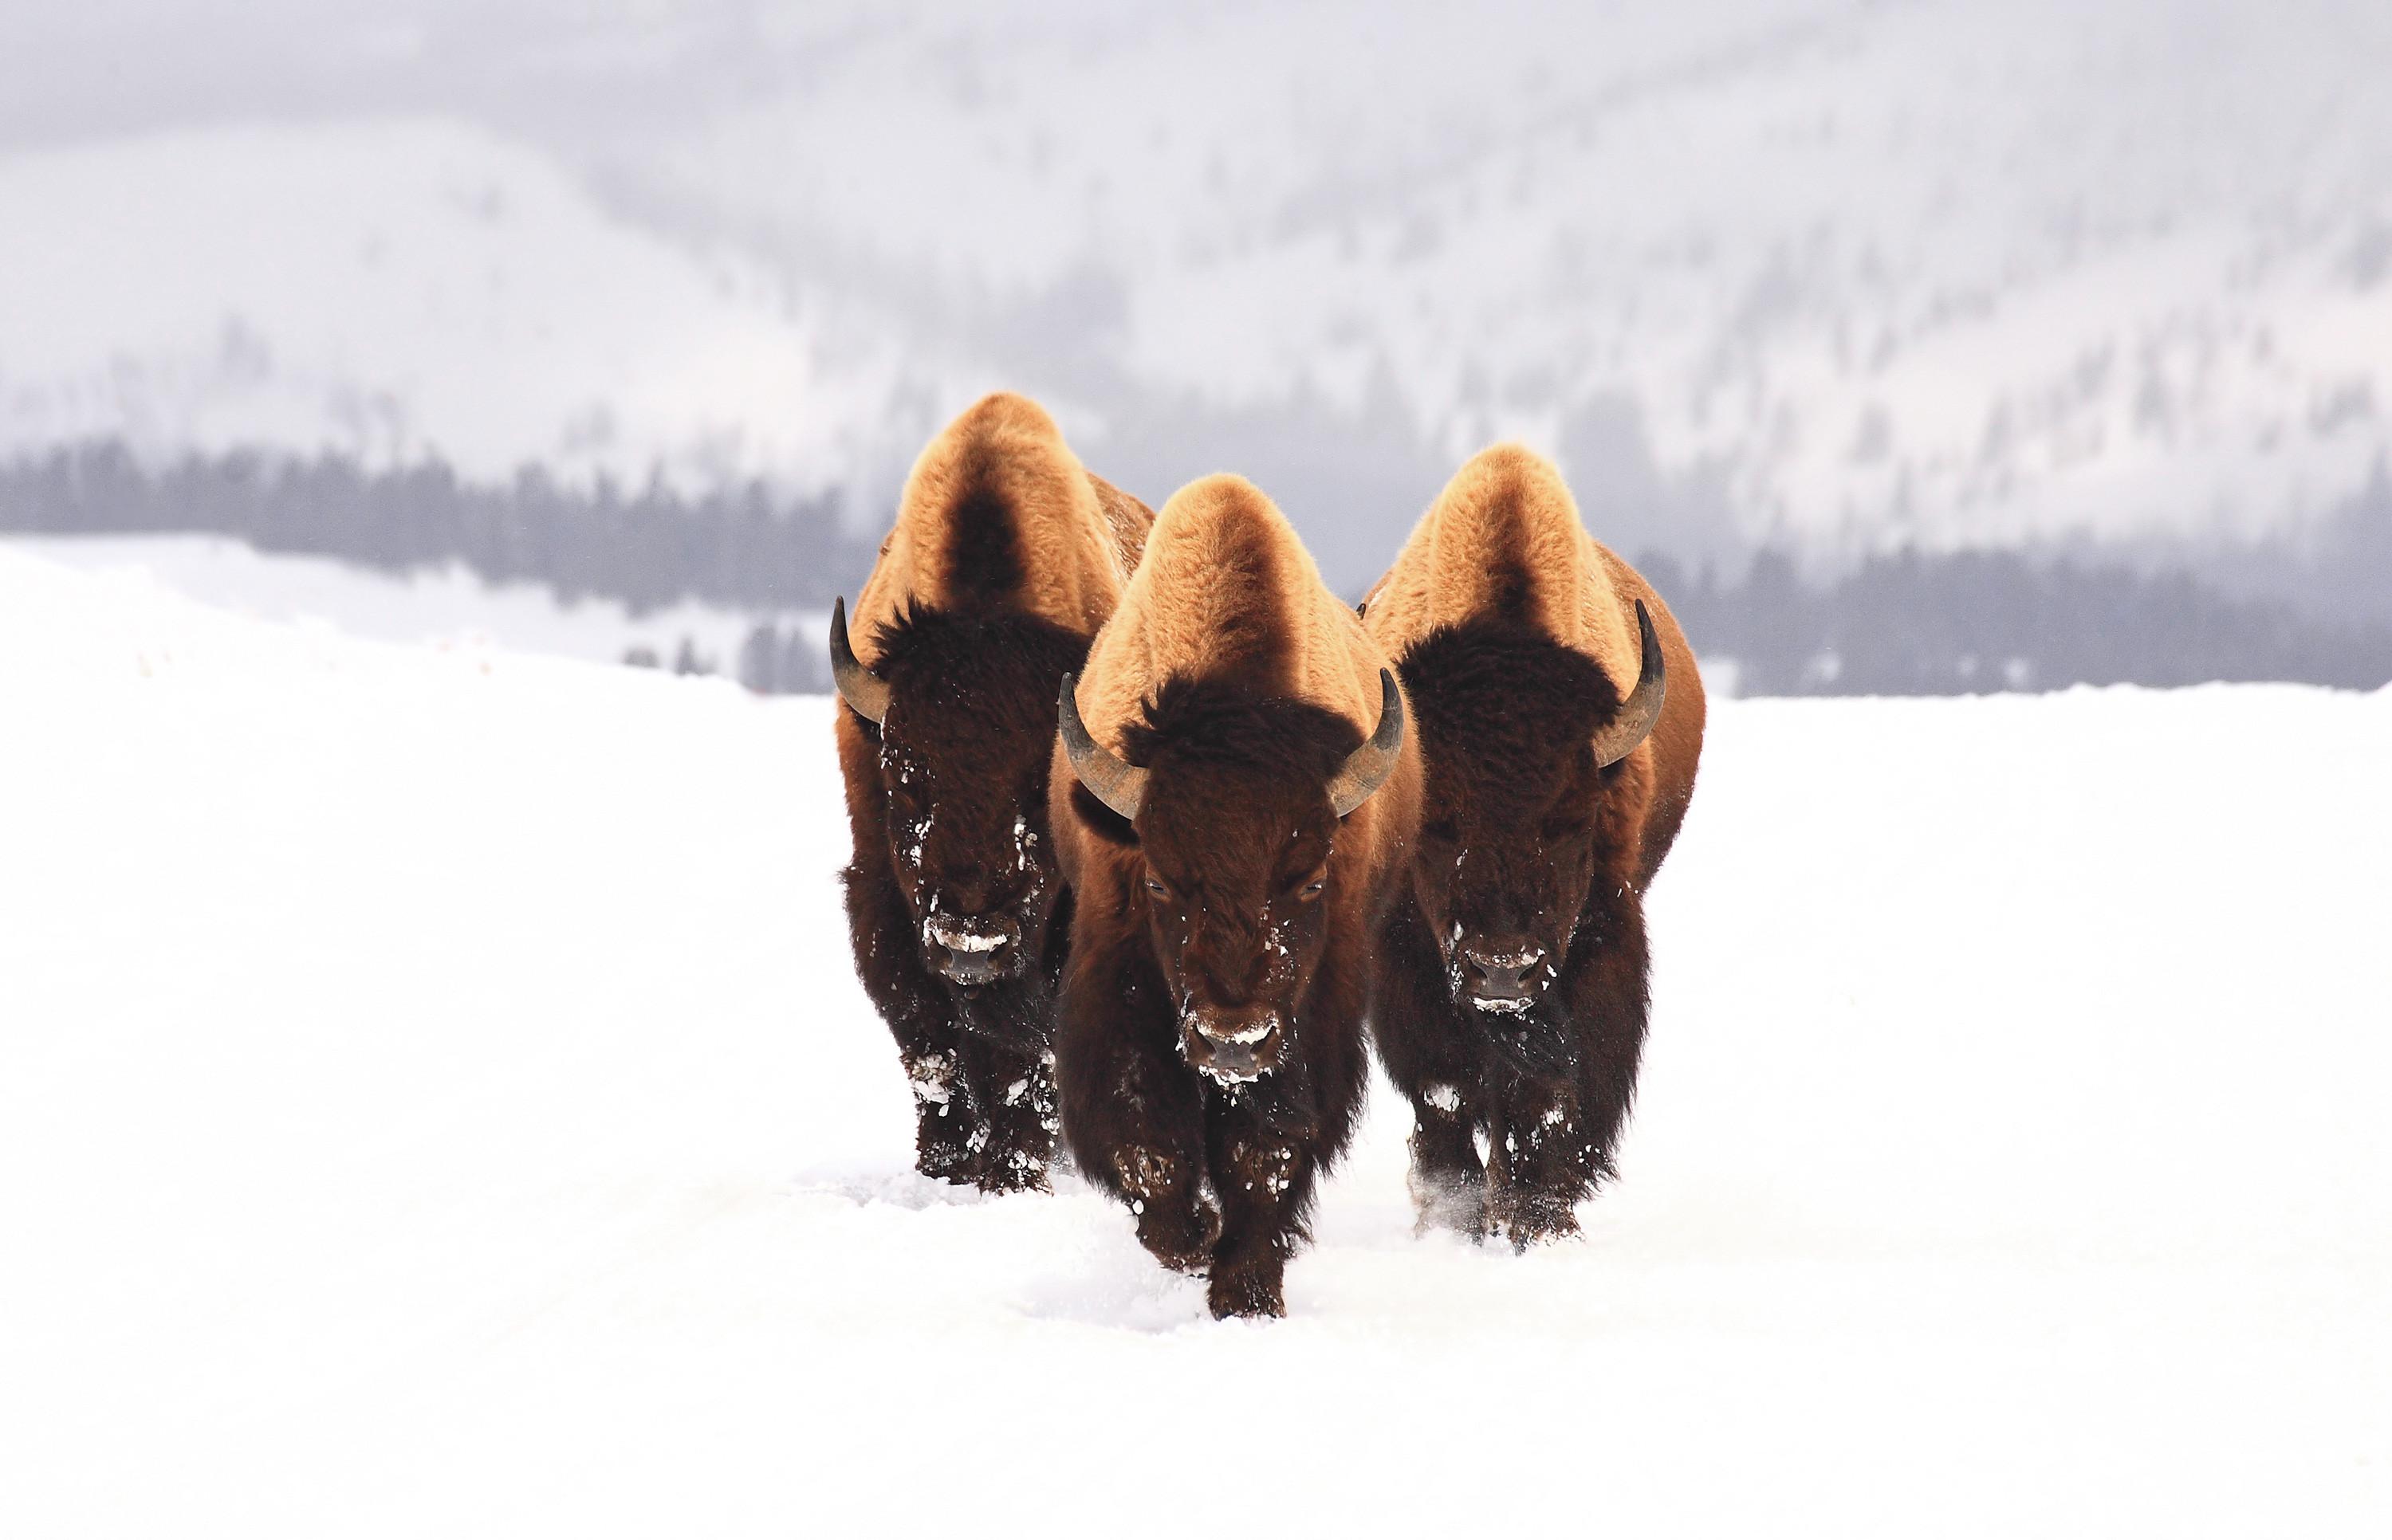 General 3000x1932 nature winter snow bison animals white wildlife horns